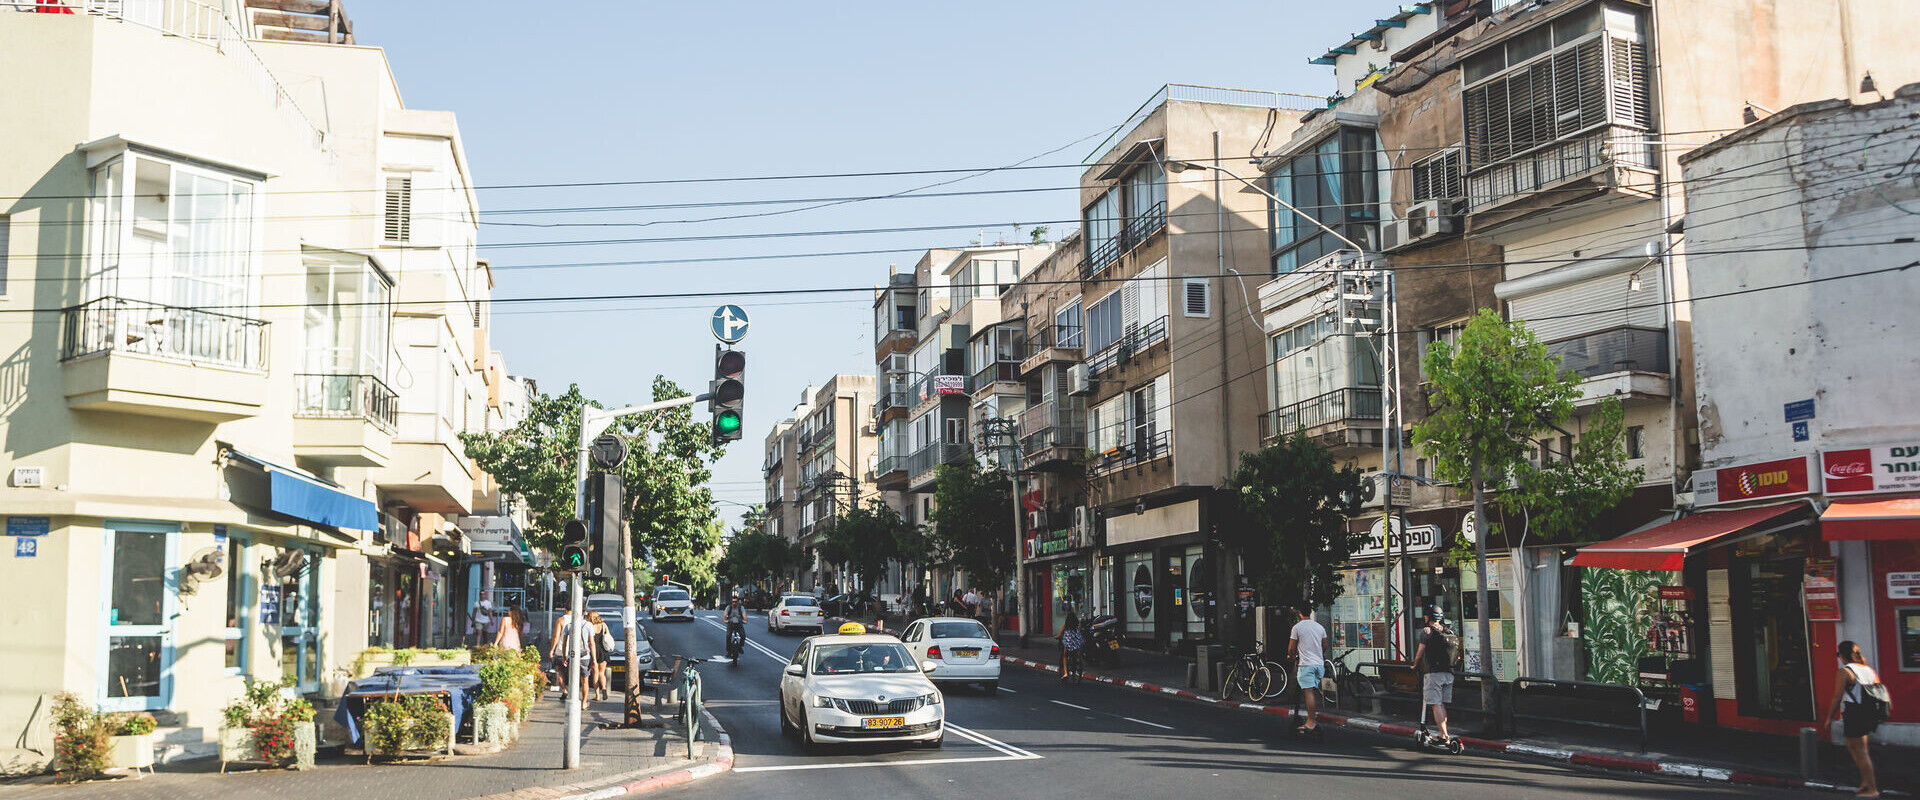 צומת הרחובות פינסקר ובוגרשוב בתל אביב (צילום: phaustov, shutterstock)